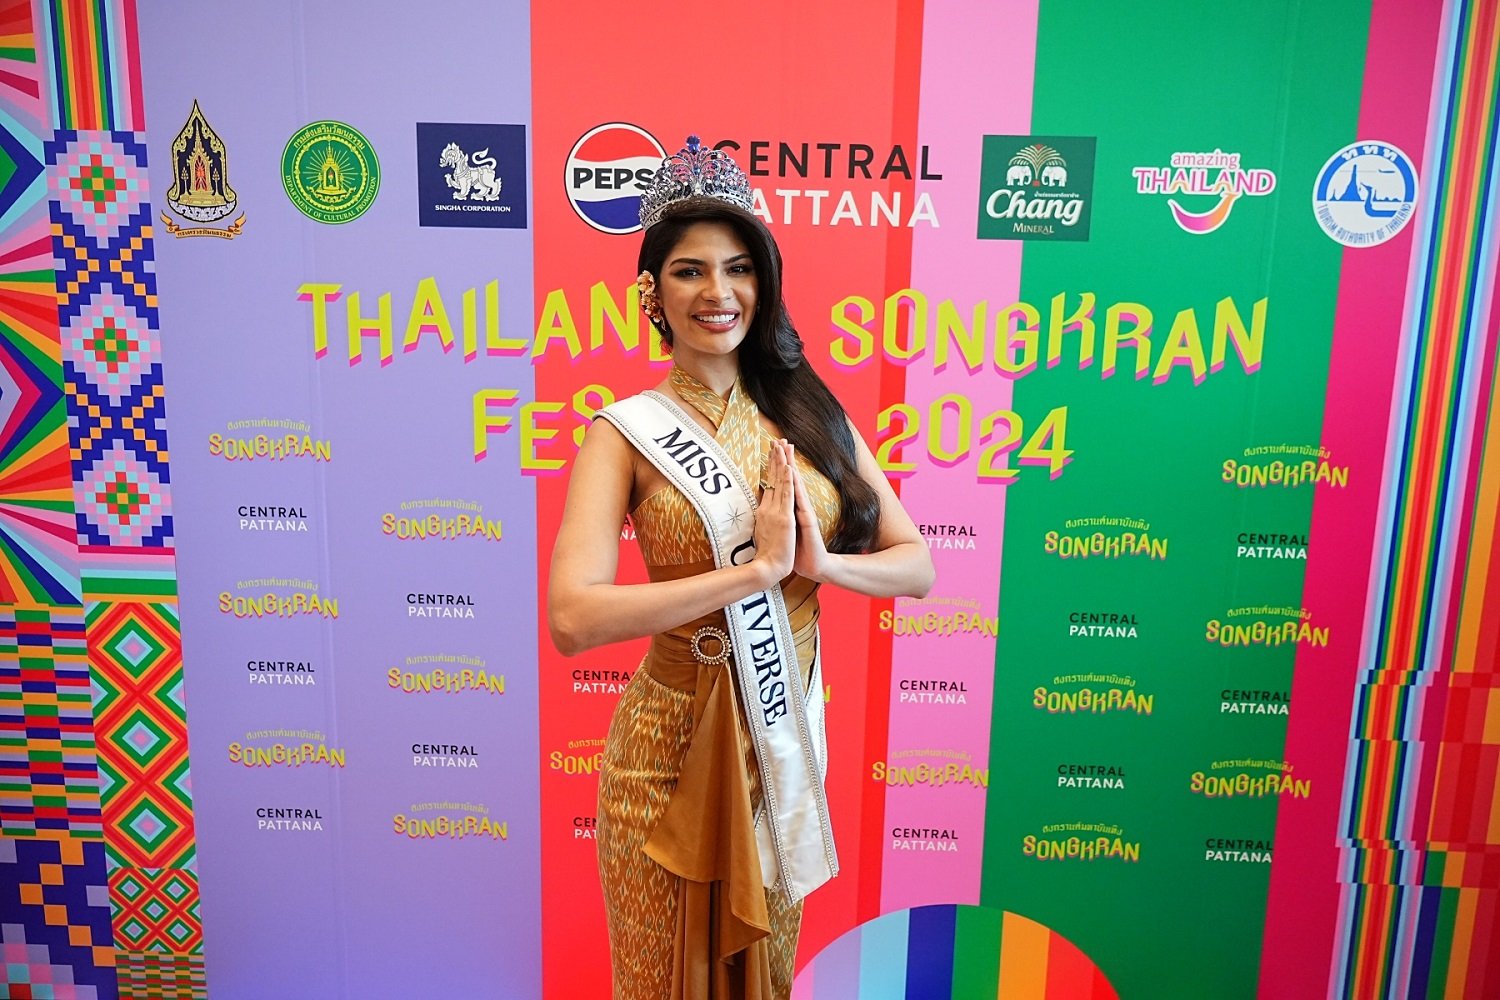 ภารกิจจักรวาล!!! เซ็นทรัลพัฒนา จัดใหญ่ฉลอง สงกรานต์มหาบันเทิง ชวน เชย์นิส ปาลาซิโอส Miss Universe เยือนไทย ในฐานะ Global Cultural Ambassador